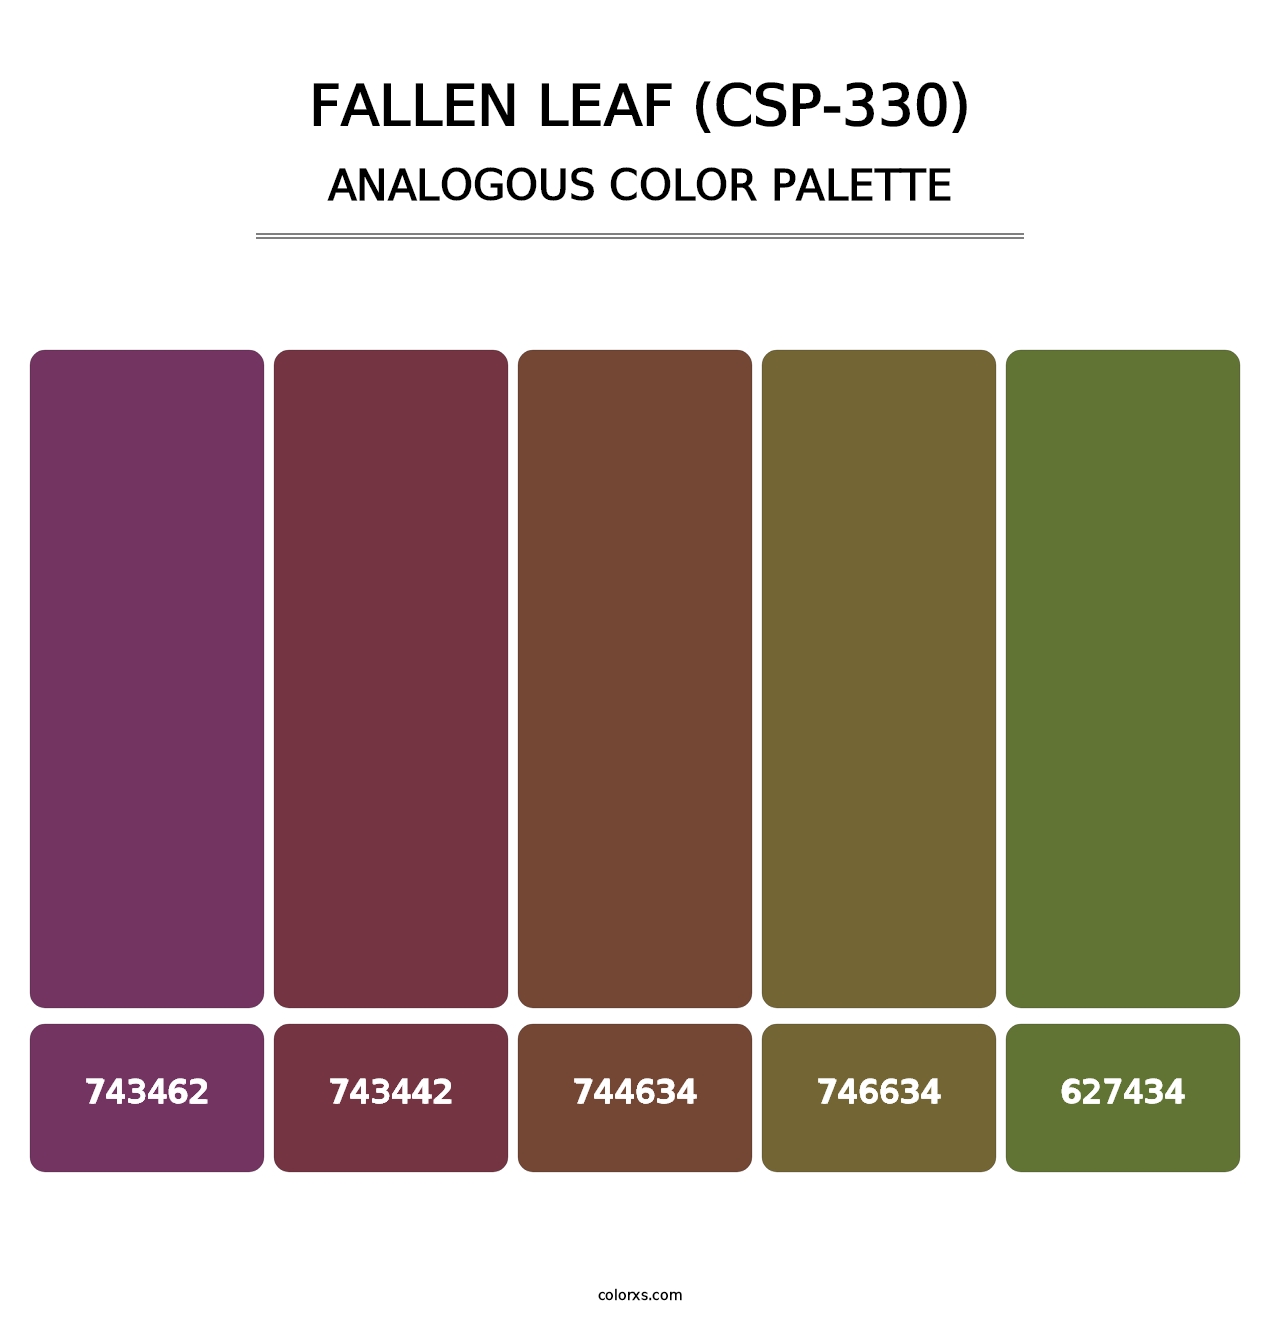 Fallen Leaf (CSP-330) - Analogous Color Palette